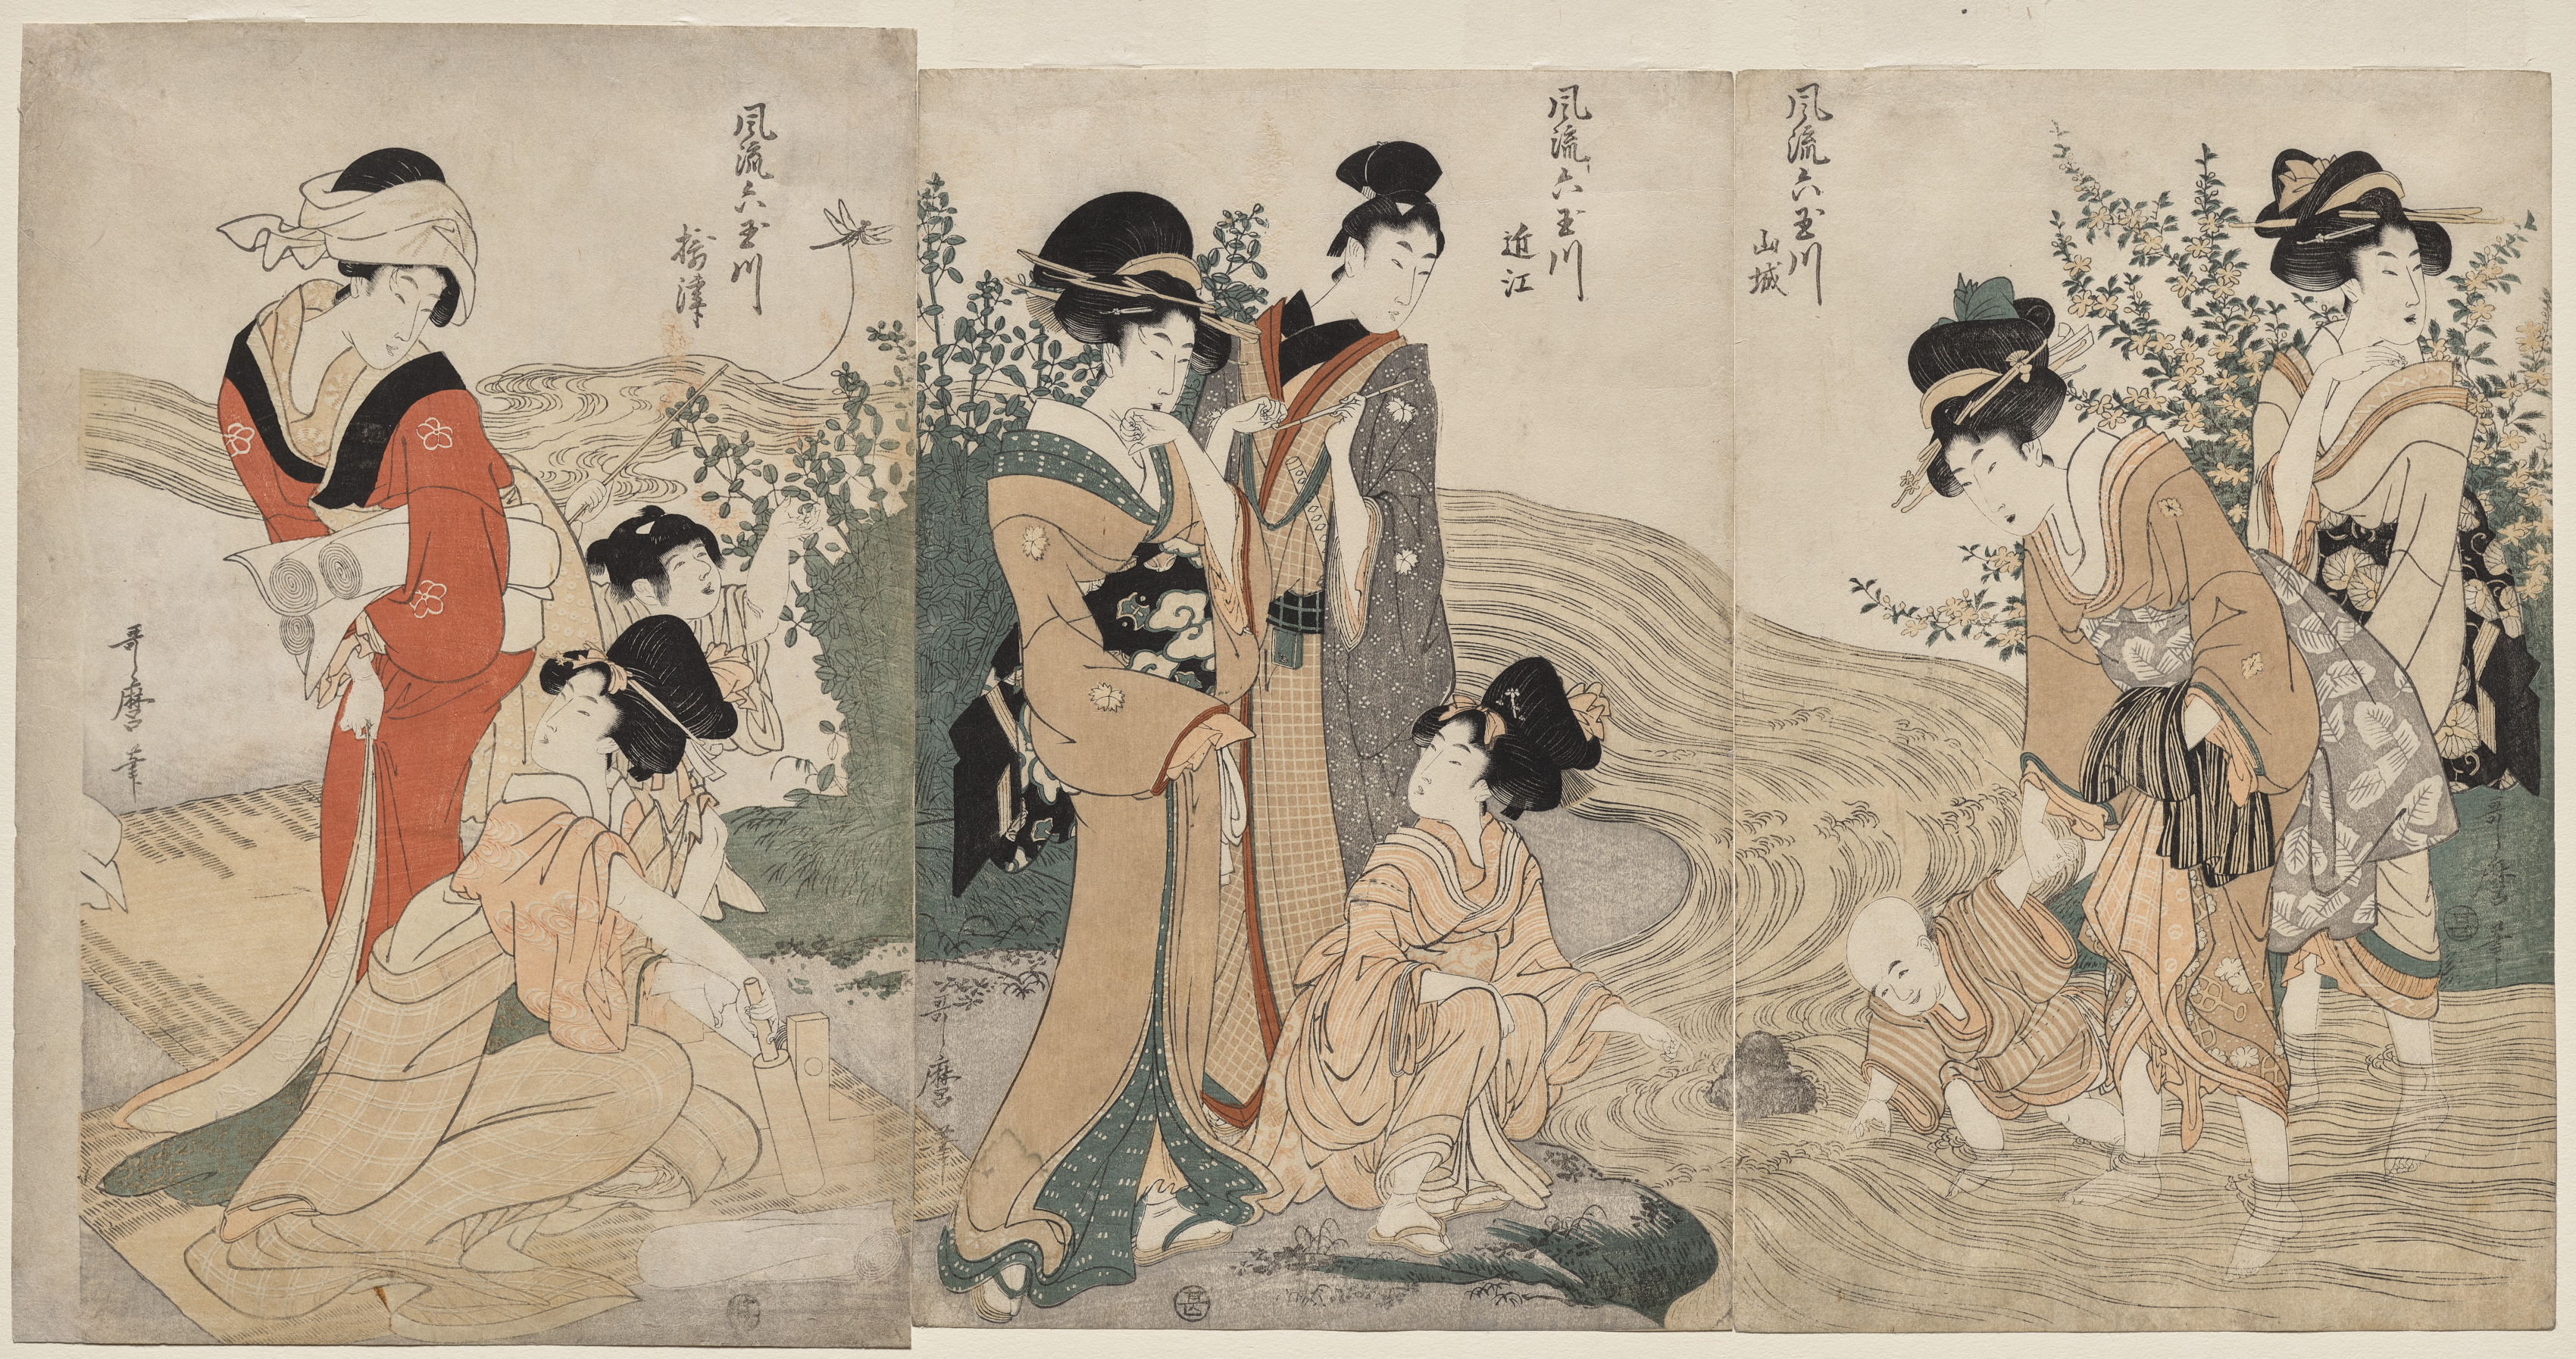 Musashi, Omi, Yamashiro, and Settsu Provinces from the series Fashionable Six Jewel Rivers (Furyu Mu Tamagawa)